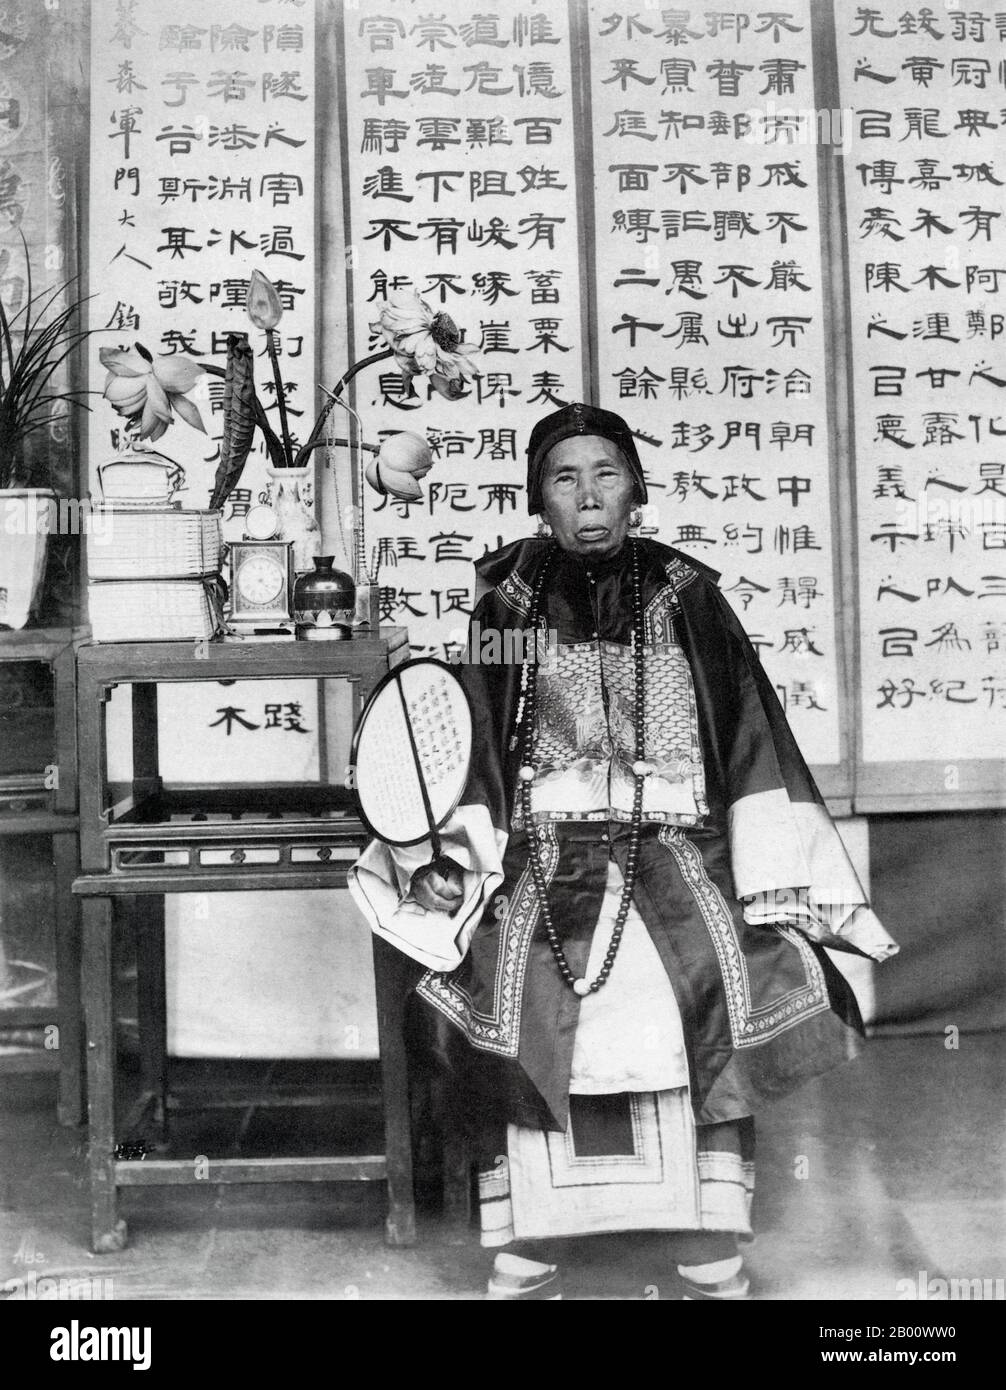 China: Eine ältere Frau aus einer Mandarin sprechenden Familie, fotografiert in der Provinz Yunnan in den Jahren 1898-1899. „Mandarin“ bezieht sich auf Standard-Chinesisch oder Standard-Mandarin-Sprache, die auf dem jeweiligen Mandarin-Dialekt in Peking gesprochen wird. Im weiteren Sinne ist Mandarin eine vielfältige Gruppe von Dialekten, die in Nord- und Südwestchina gesprochen werden. Die Prävalenz dieser sprachlichen Homogenität in Nordchina ist weitgehend das Ergebnis der Geographie: Ein Großteil Nordchina ist von Ebenen bedeckt und flach. Stockfoto